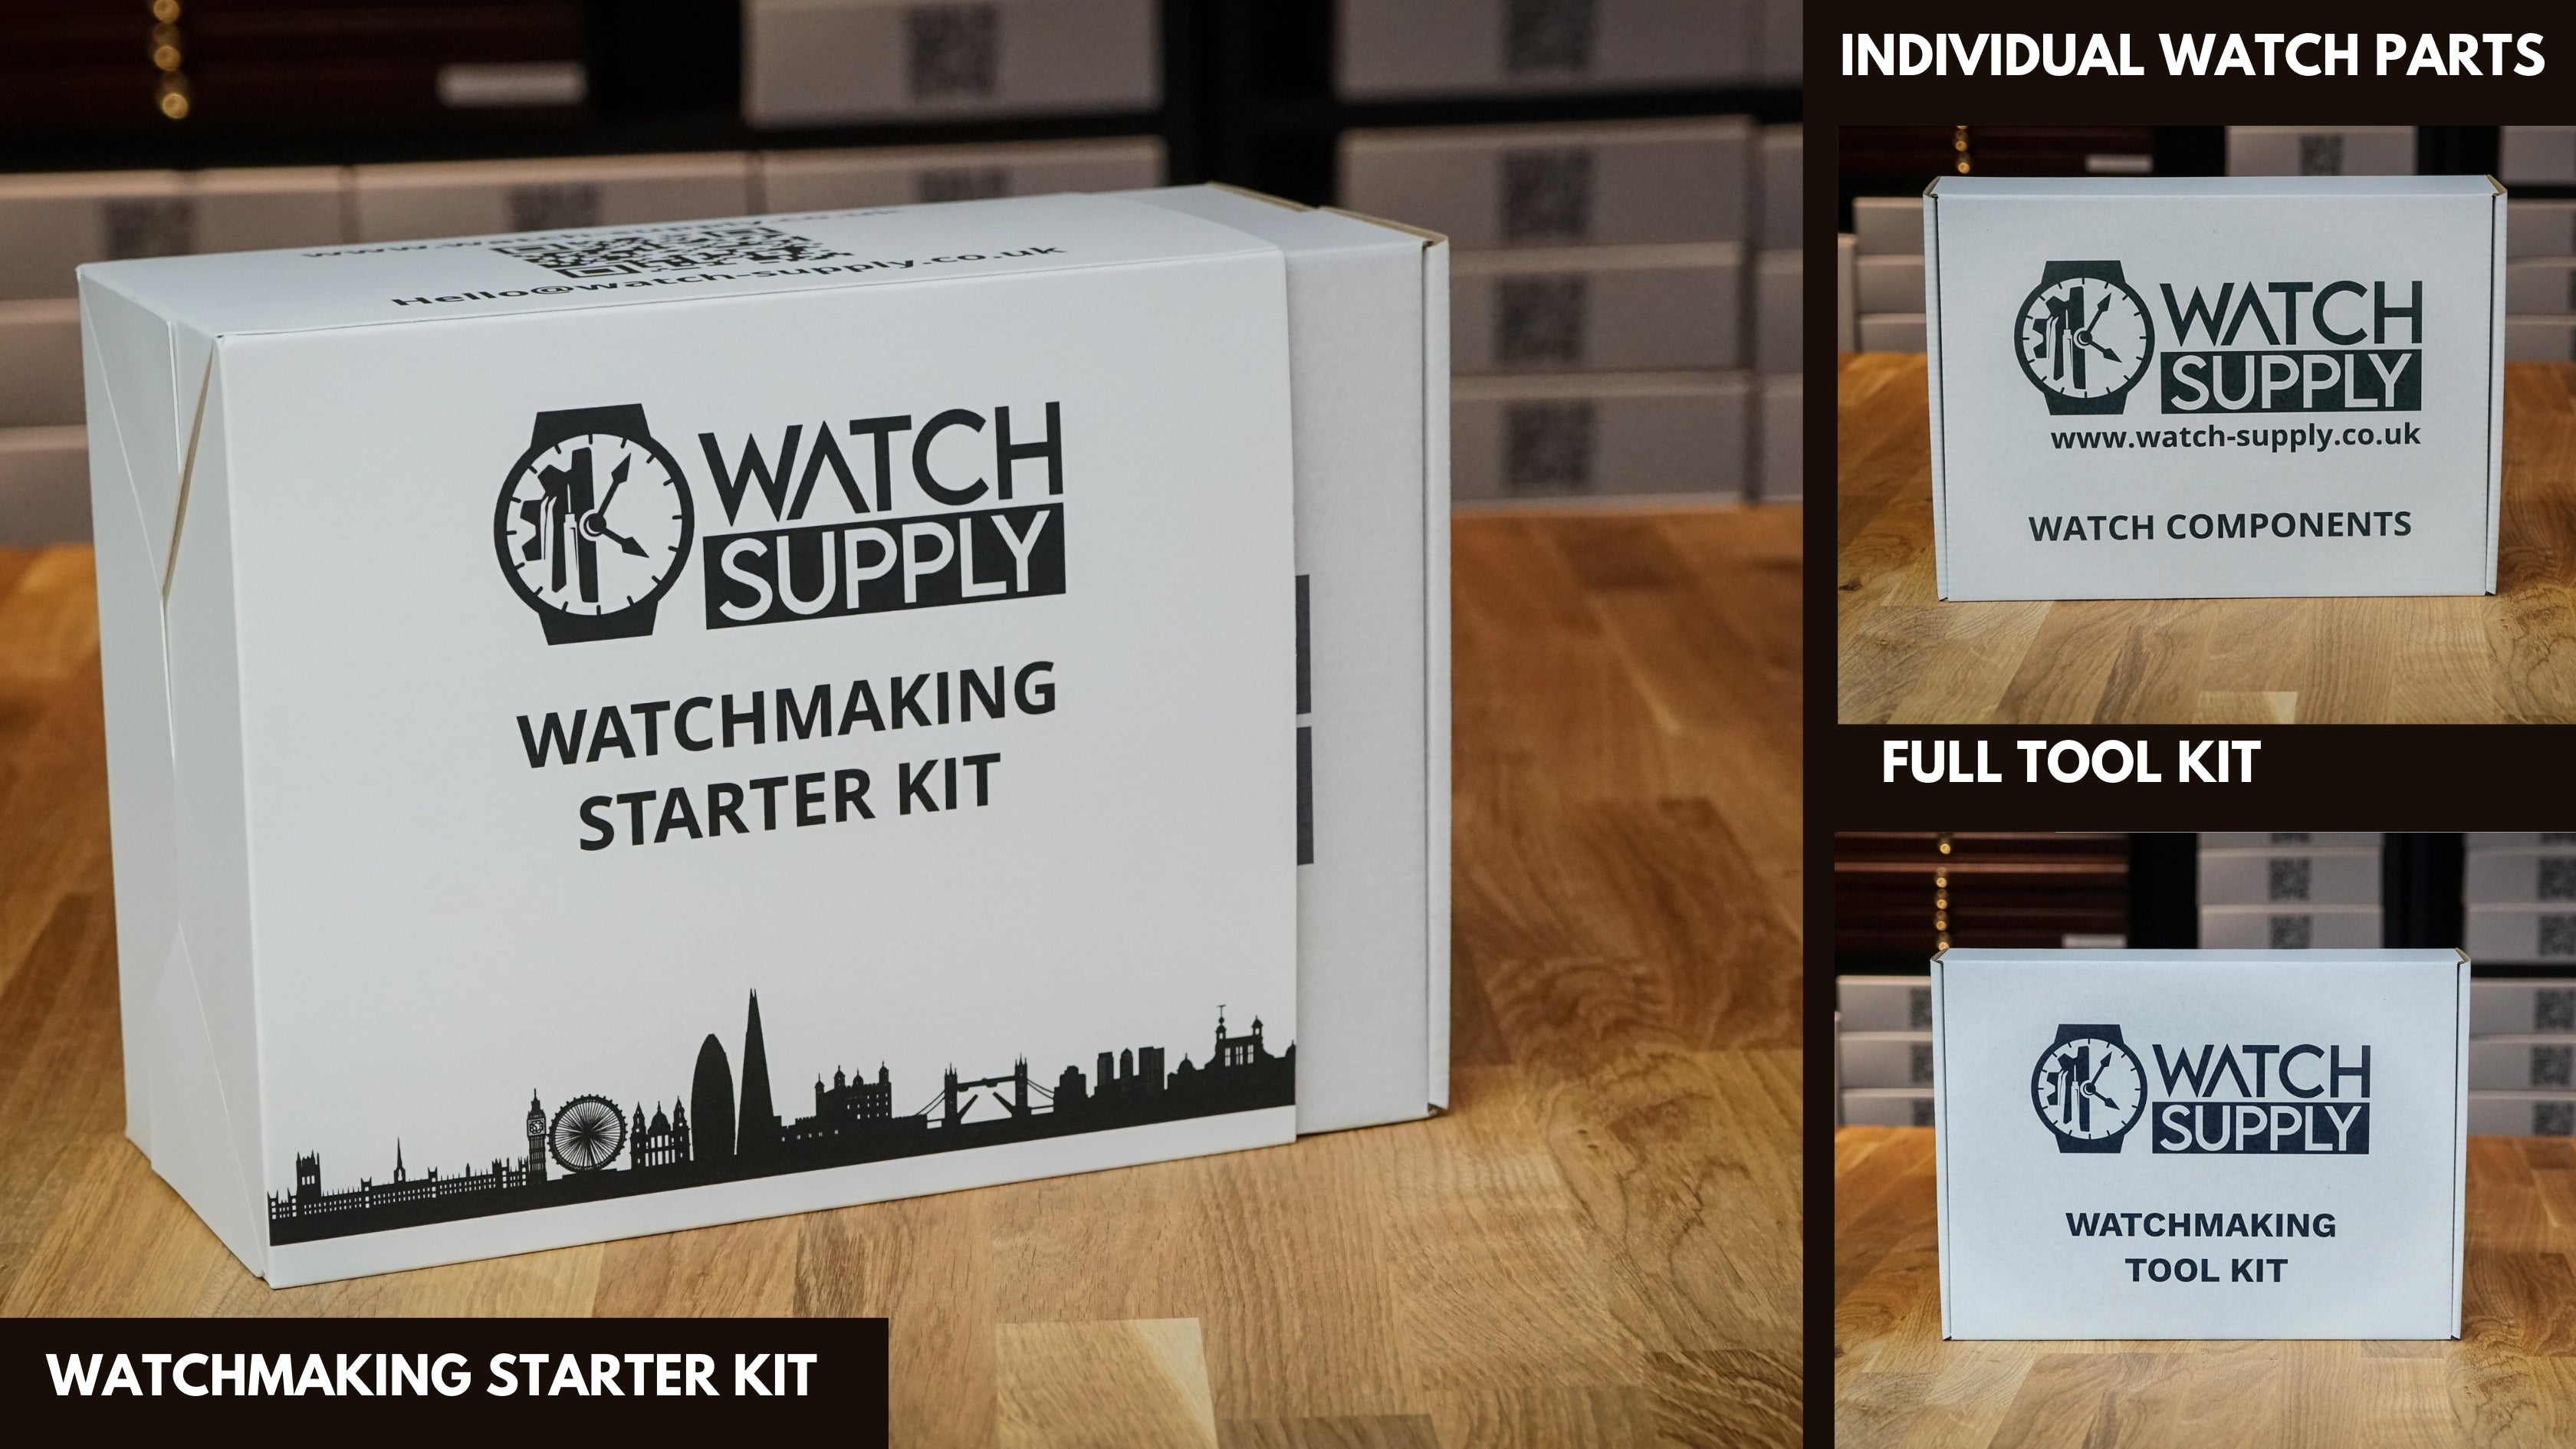 Watchmaking kit - Mayfair - Ref. 24411